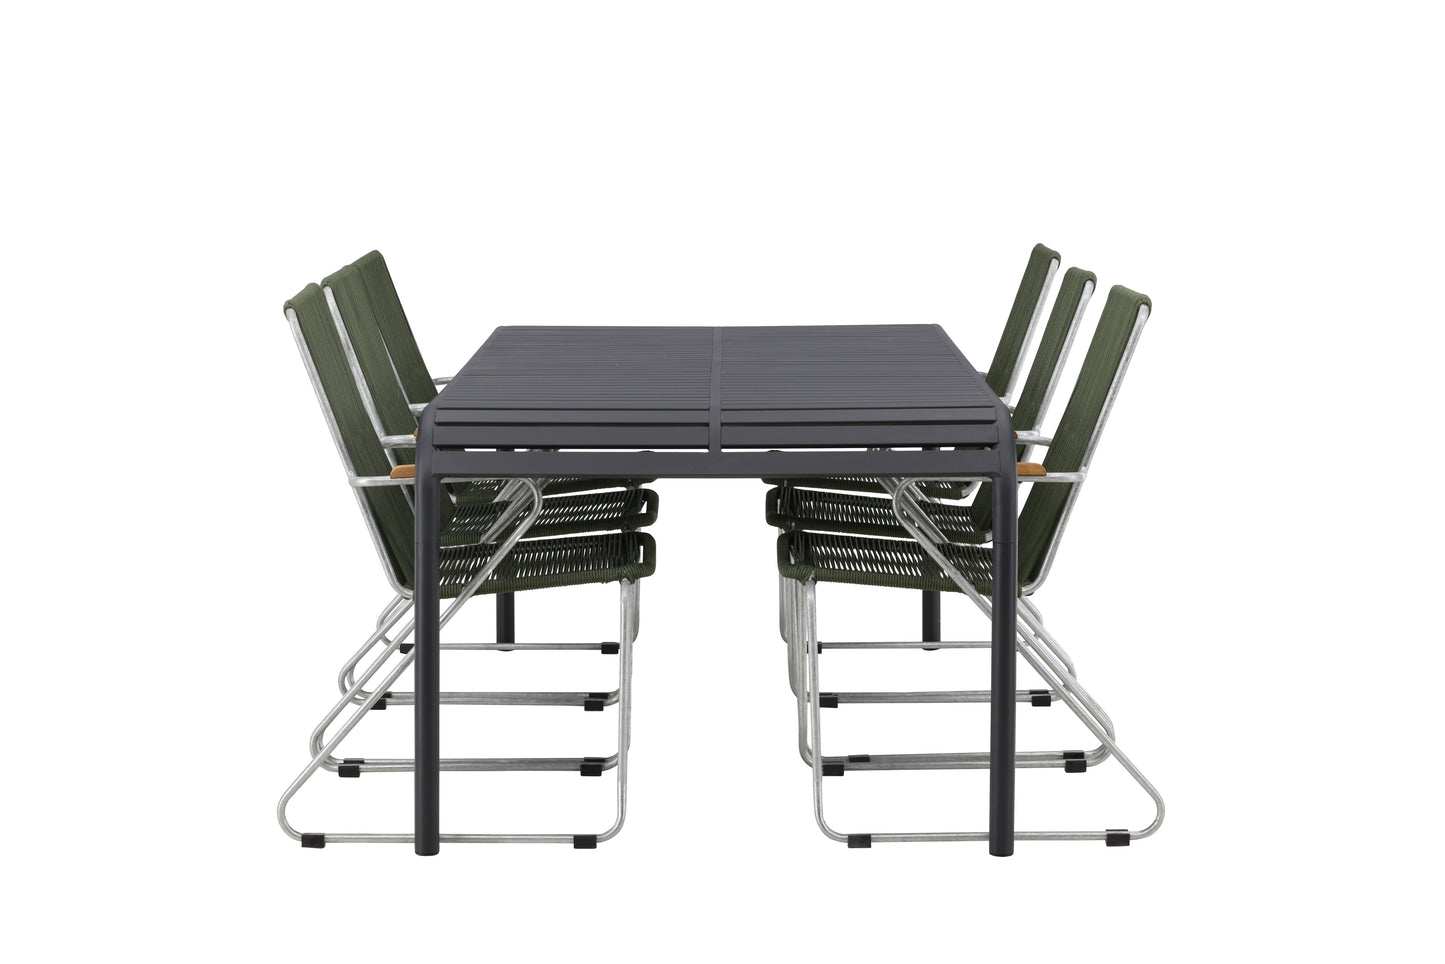 Borneo - Spisebord, Aluminium - Sort / Rektangulær 100*200* + Bois stol Stål - Sølv / Grøn Reb